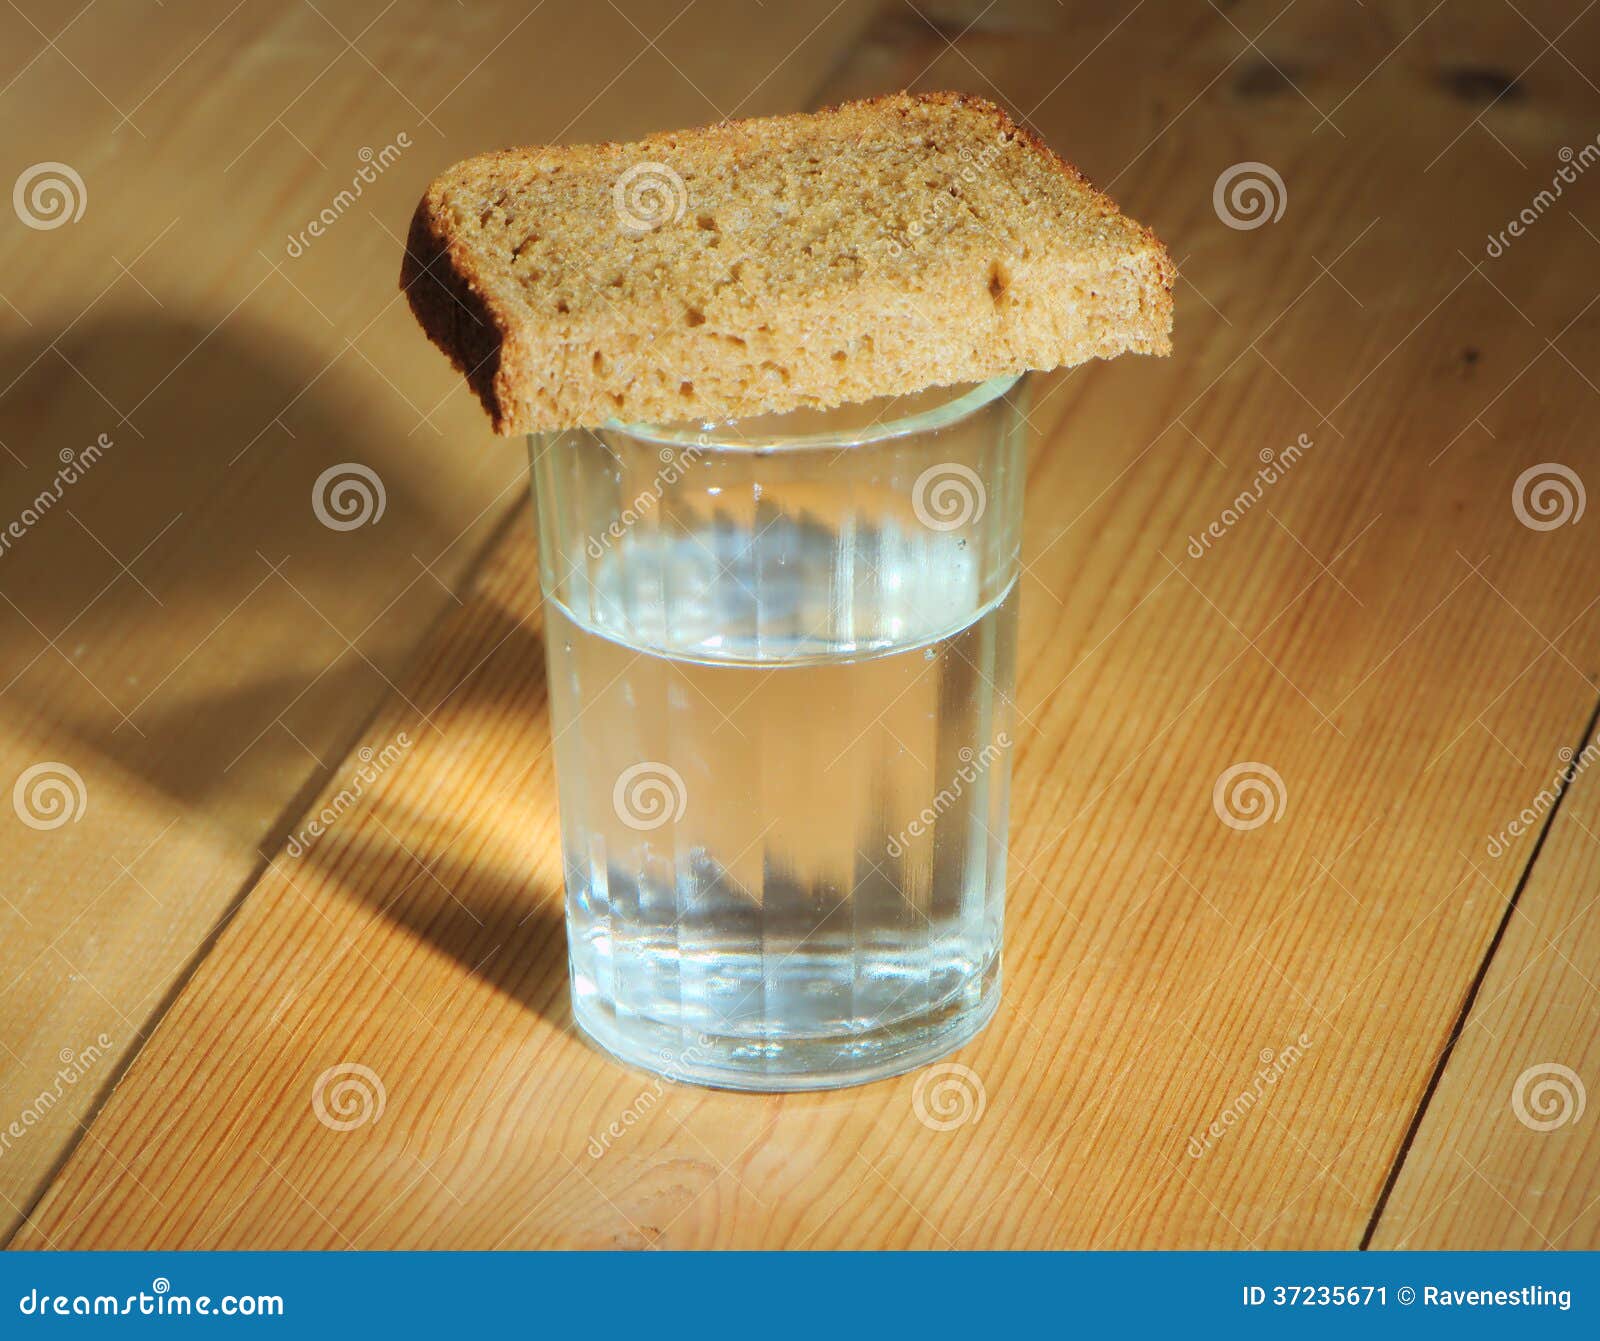 Ставят стакан воды и хлеб. Рюмка с хлебом. Стопка с хлебом.